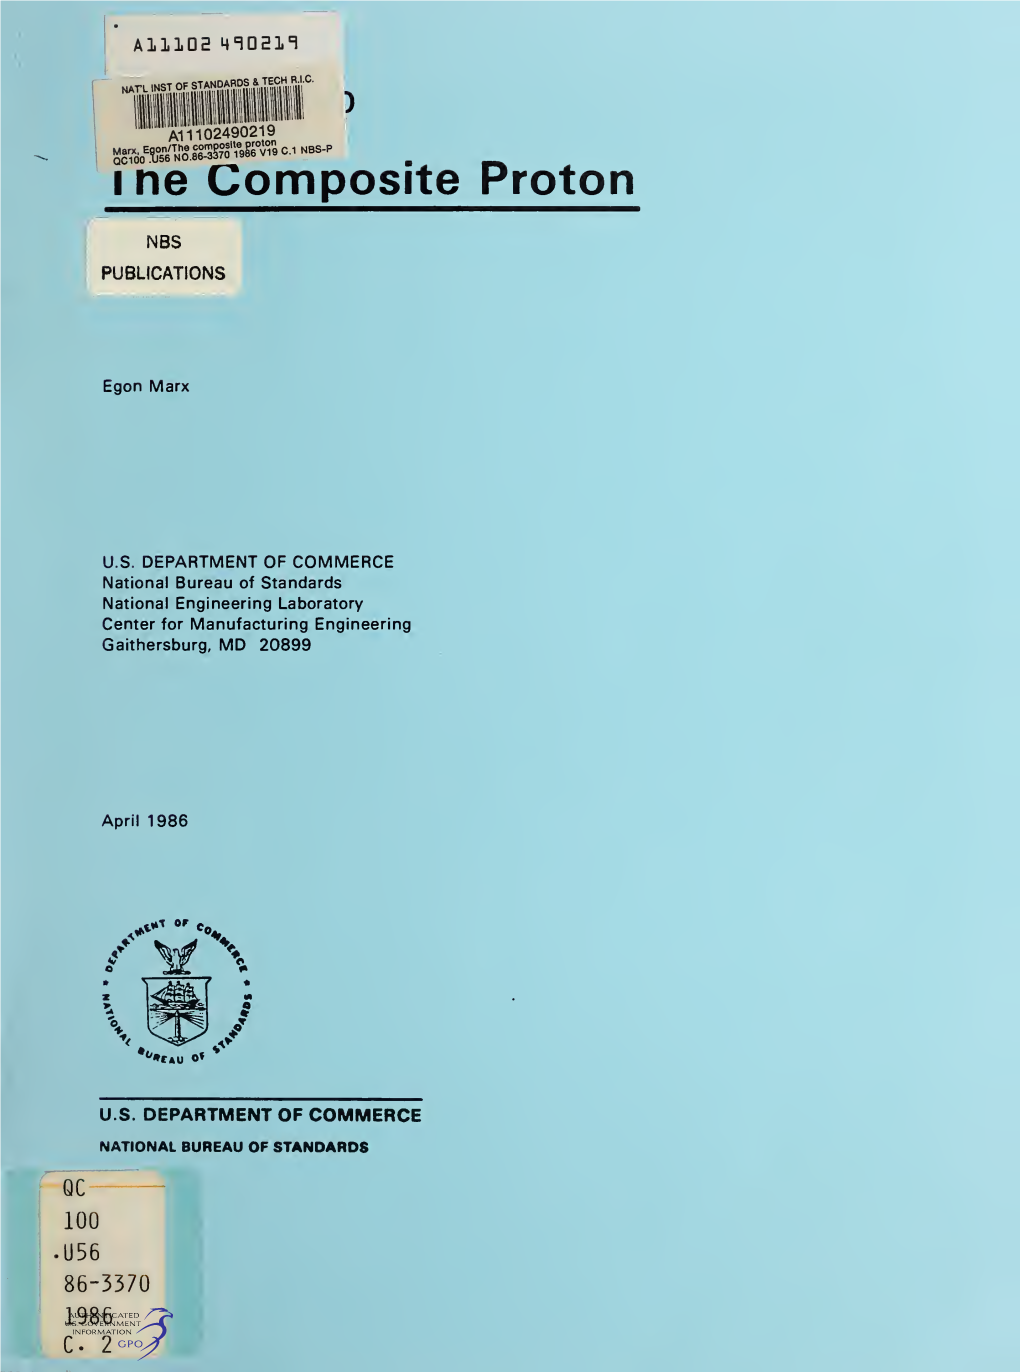 The Composite Proton